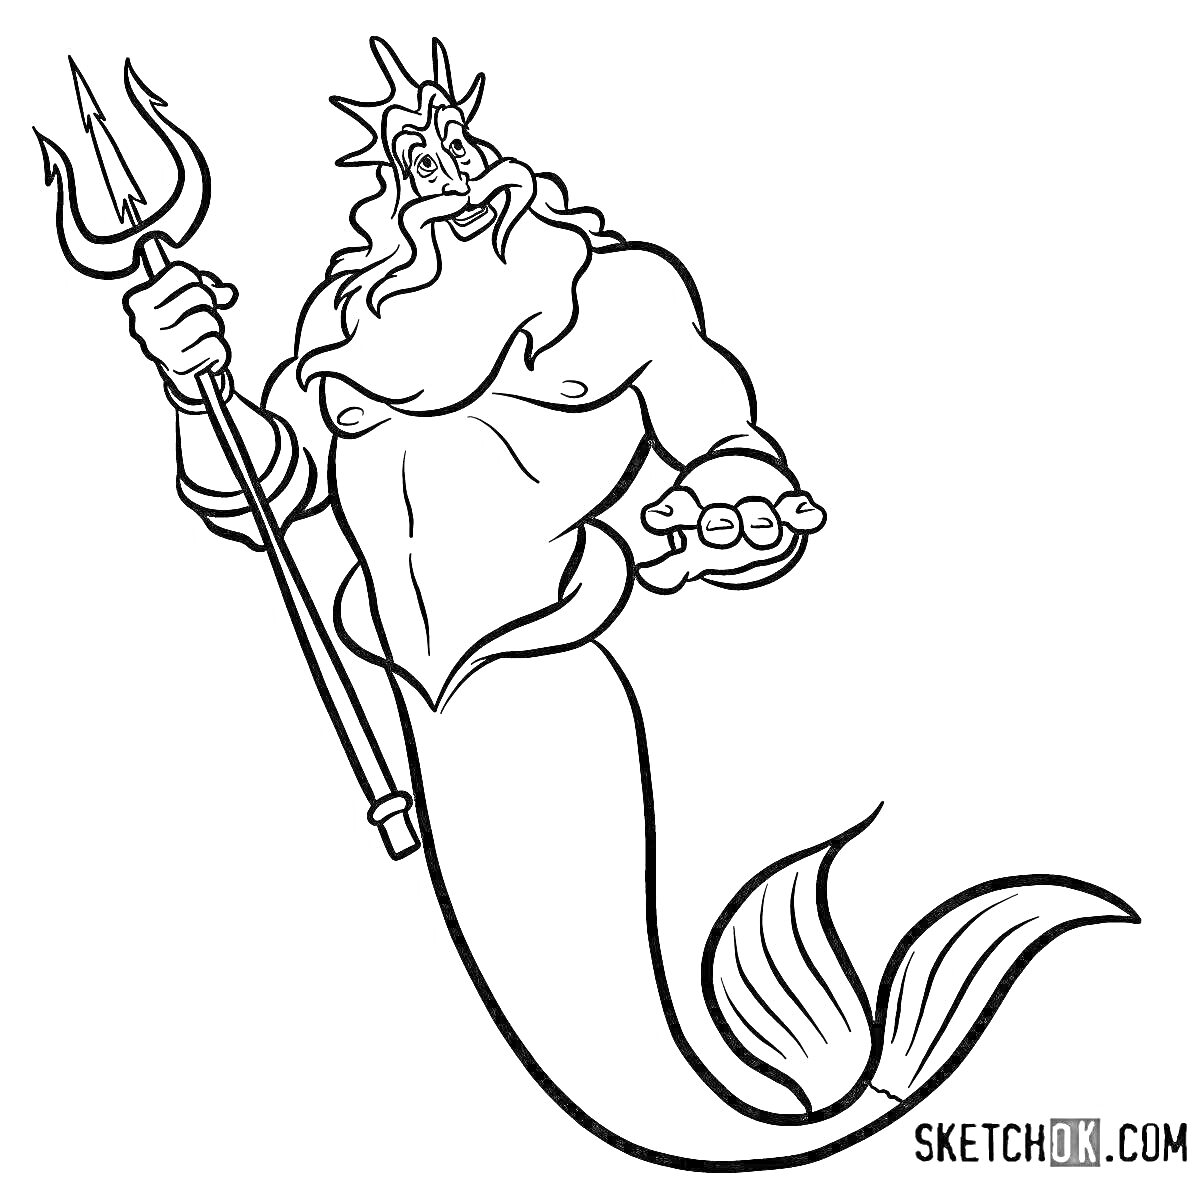 Морской царь с трезубцем и рыбьим хвостом